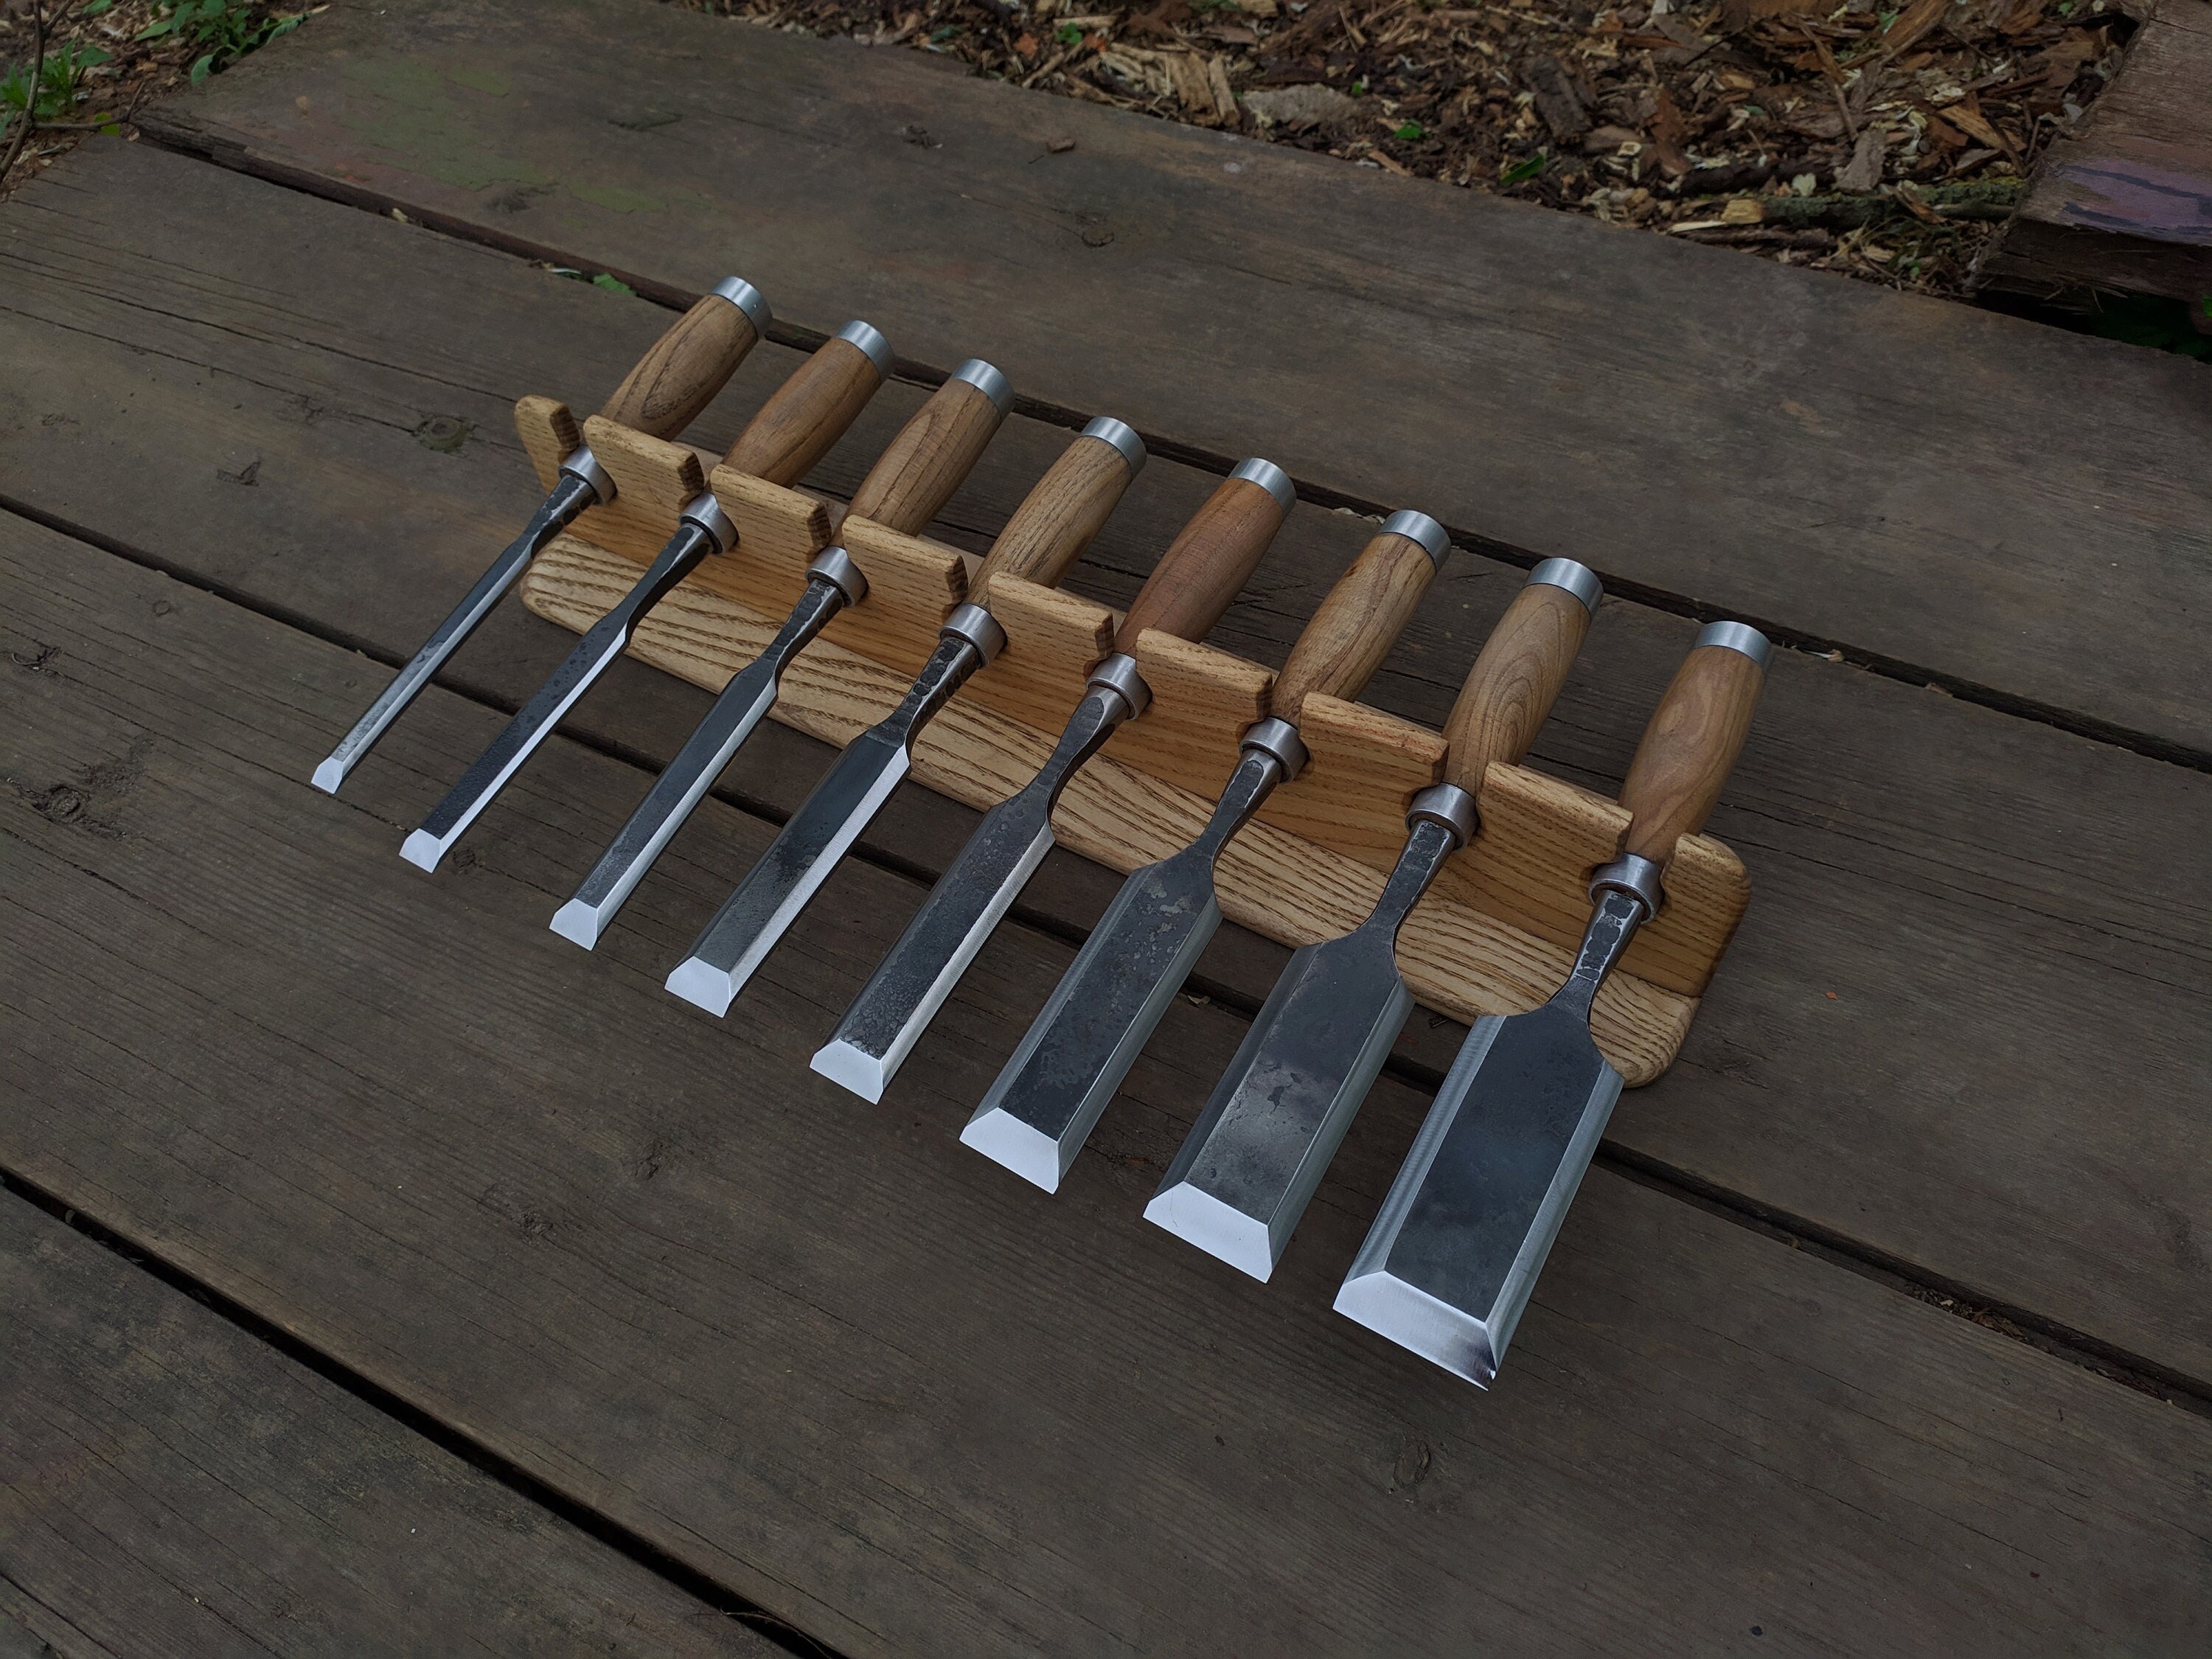 Set de 4 couteaux avec trousse de rangement - Maison Du Tournage